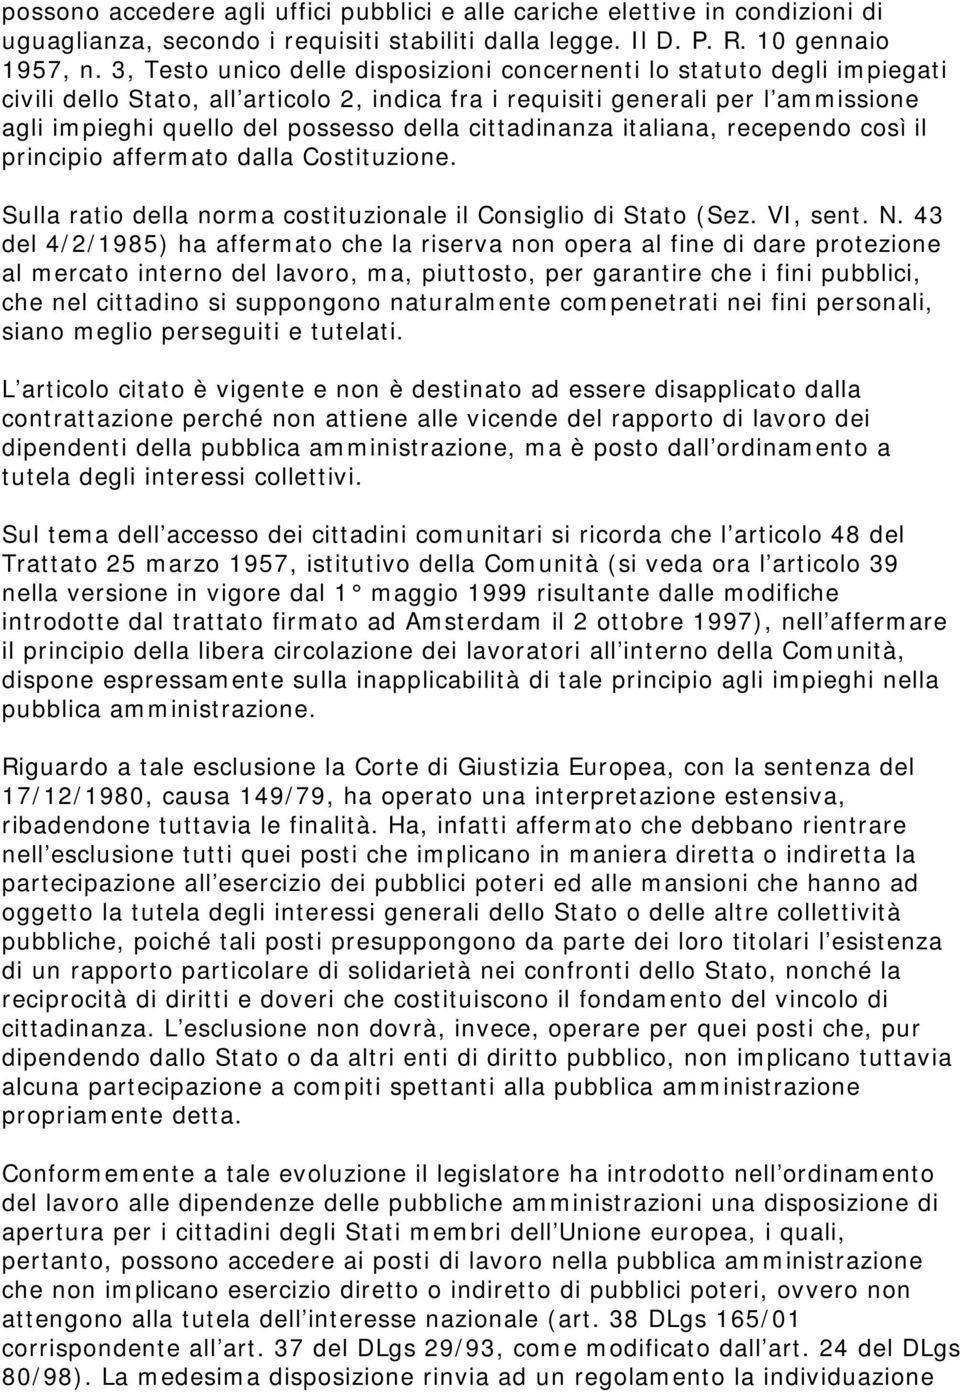 cittadinanza italiana, recependo così il principio affermato dalla Costituzione. Sulla ratio della norma costituzionale il Consiglio di Stato (Sez. VI, sent. N.